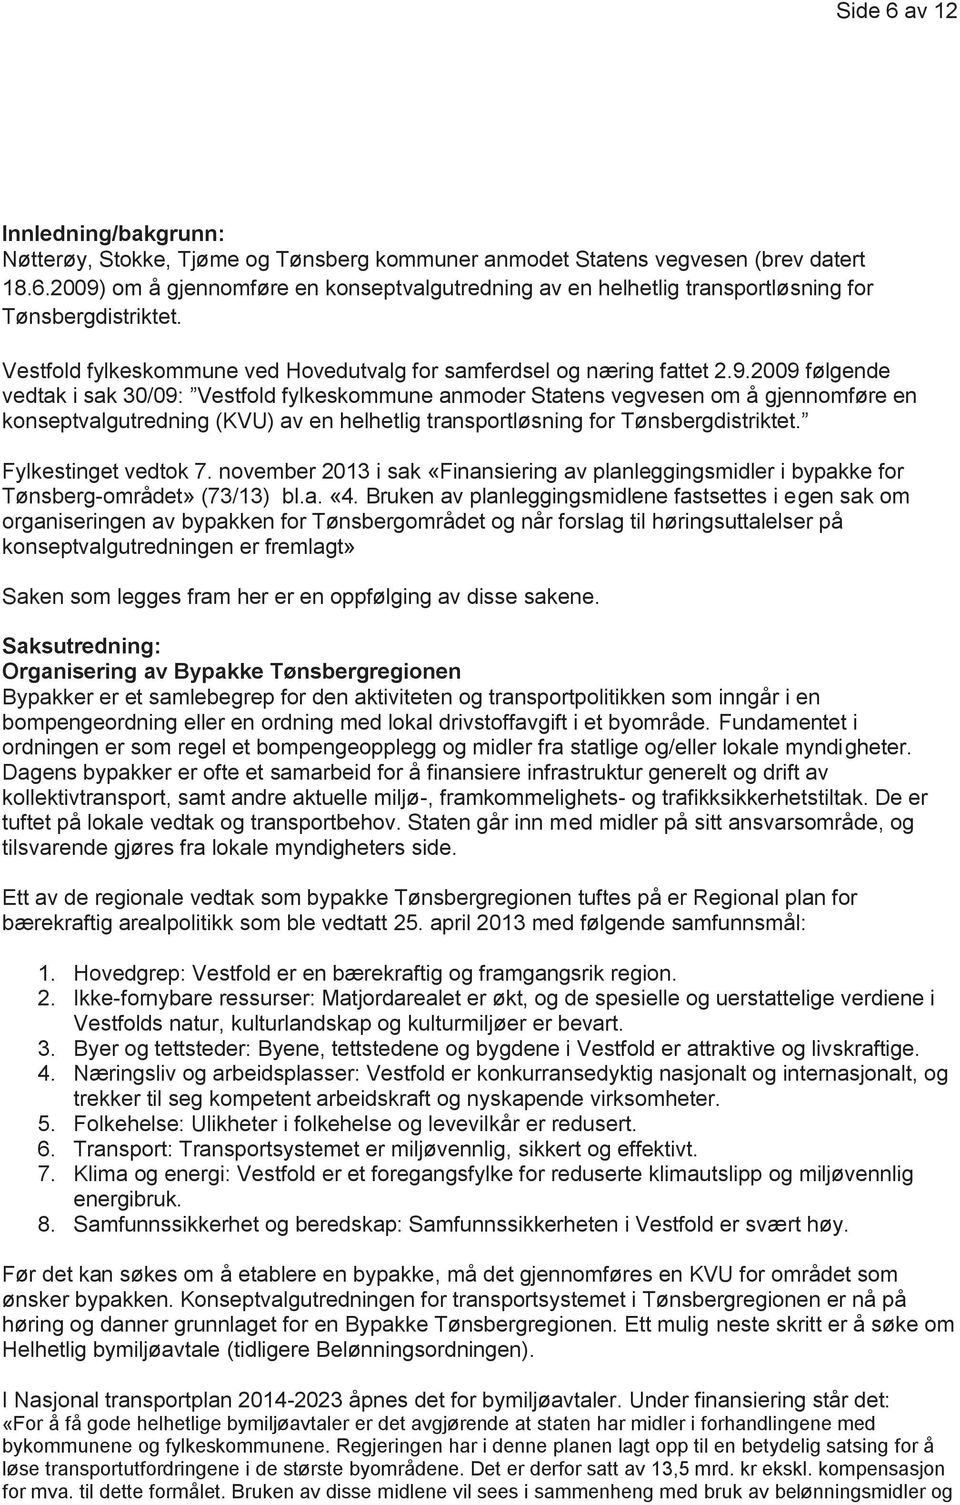 2009 følgende vedtak i sak 30/09: Vestfold fylkeskommune anmoder Statens vegvesen om å gjennomføre en konseptvalgutredning (KVU) av en helhetlig transportløsning for Tønsbergdistriktet.